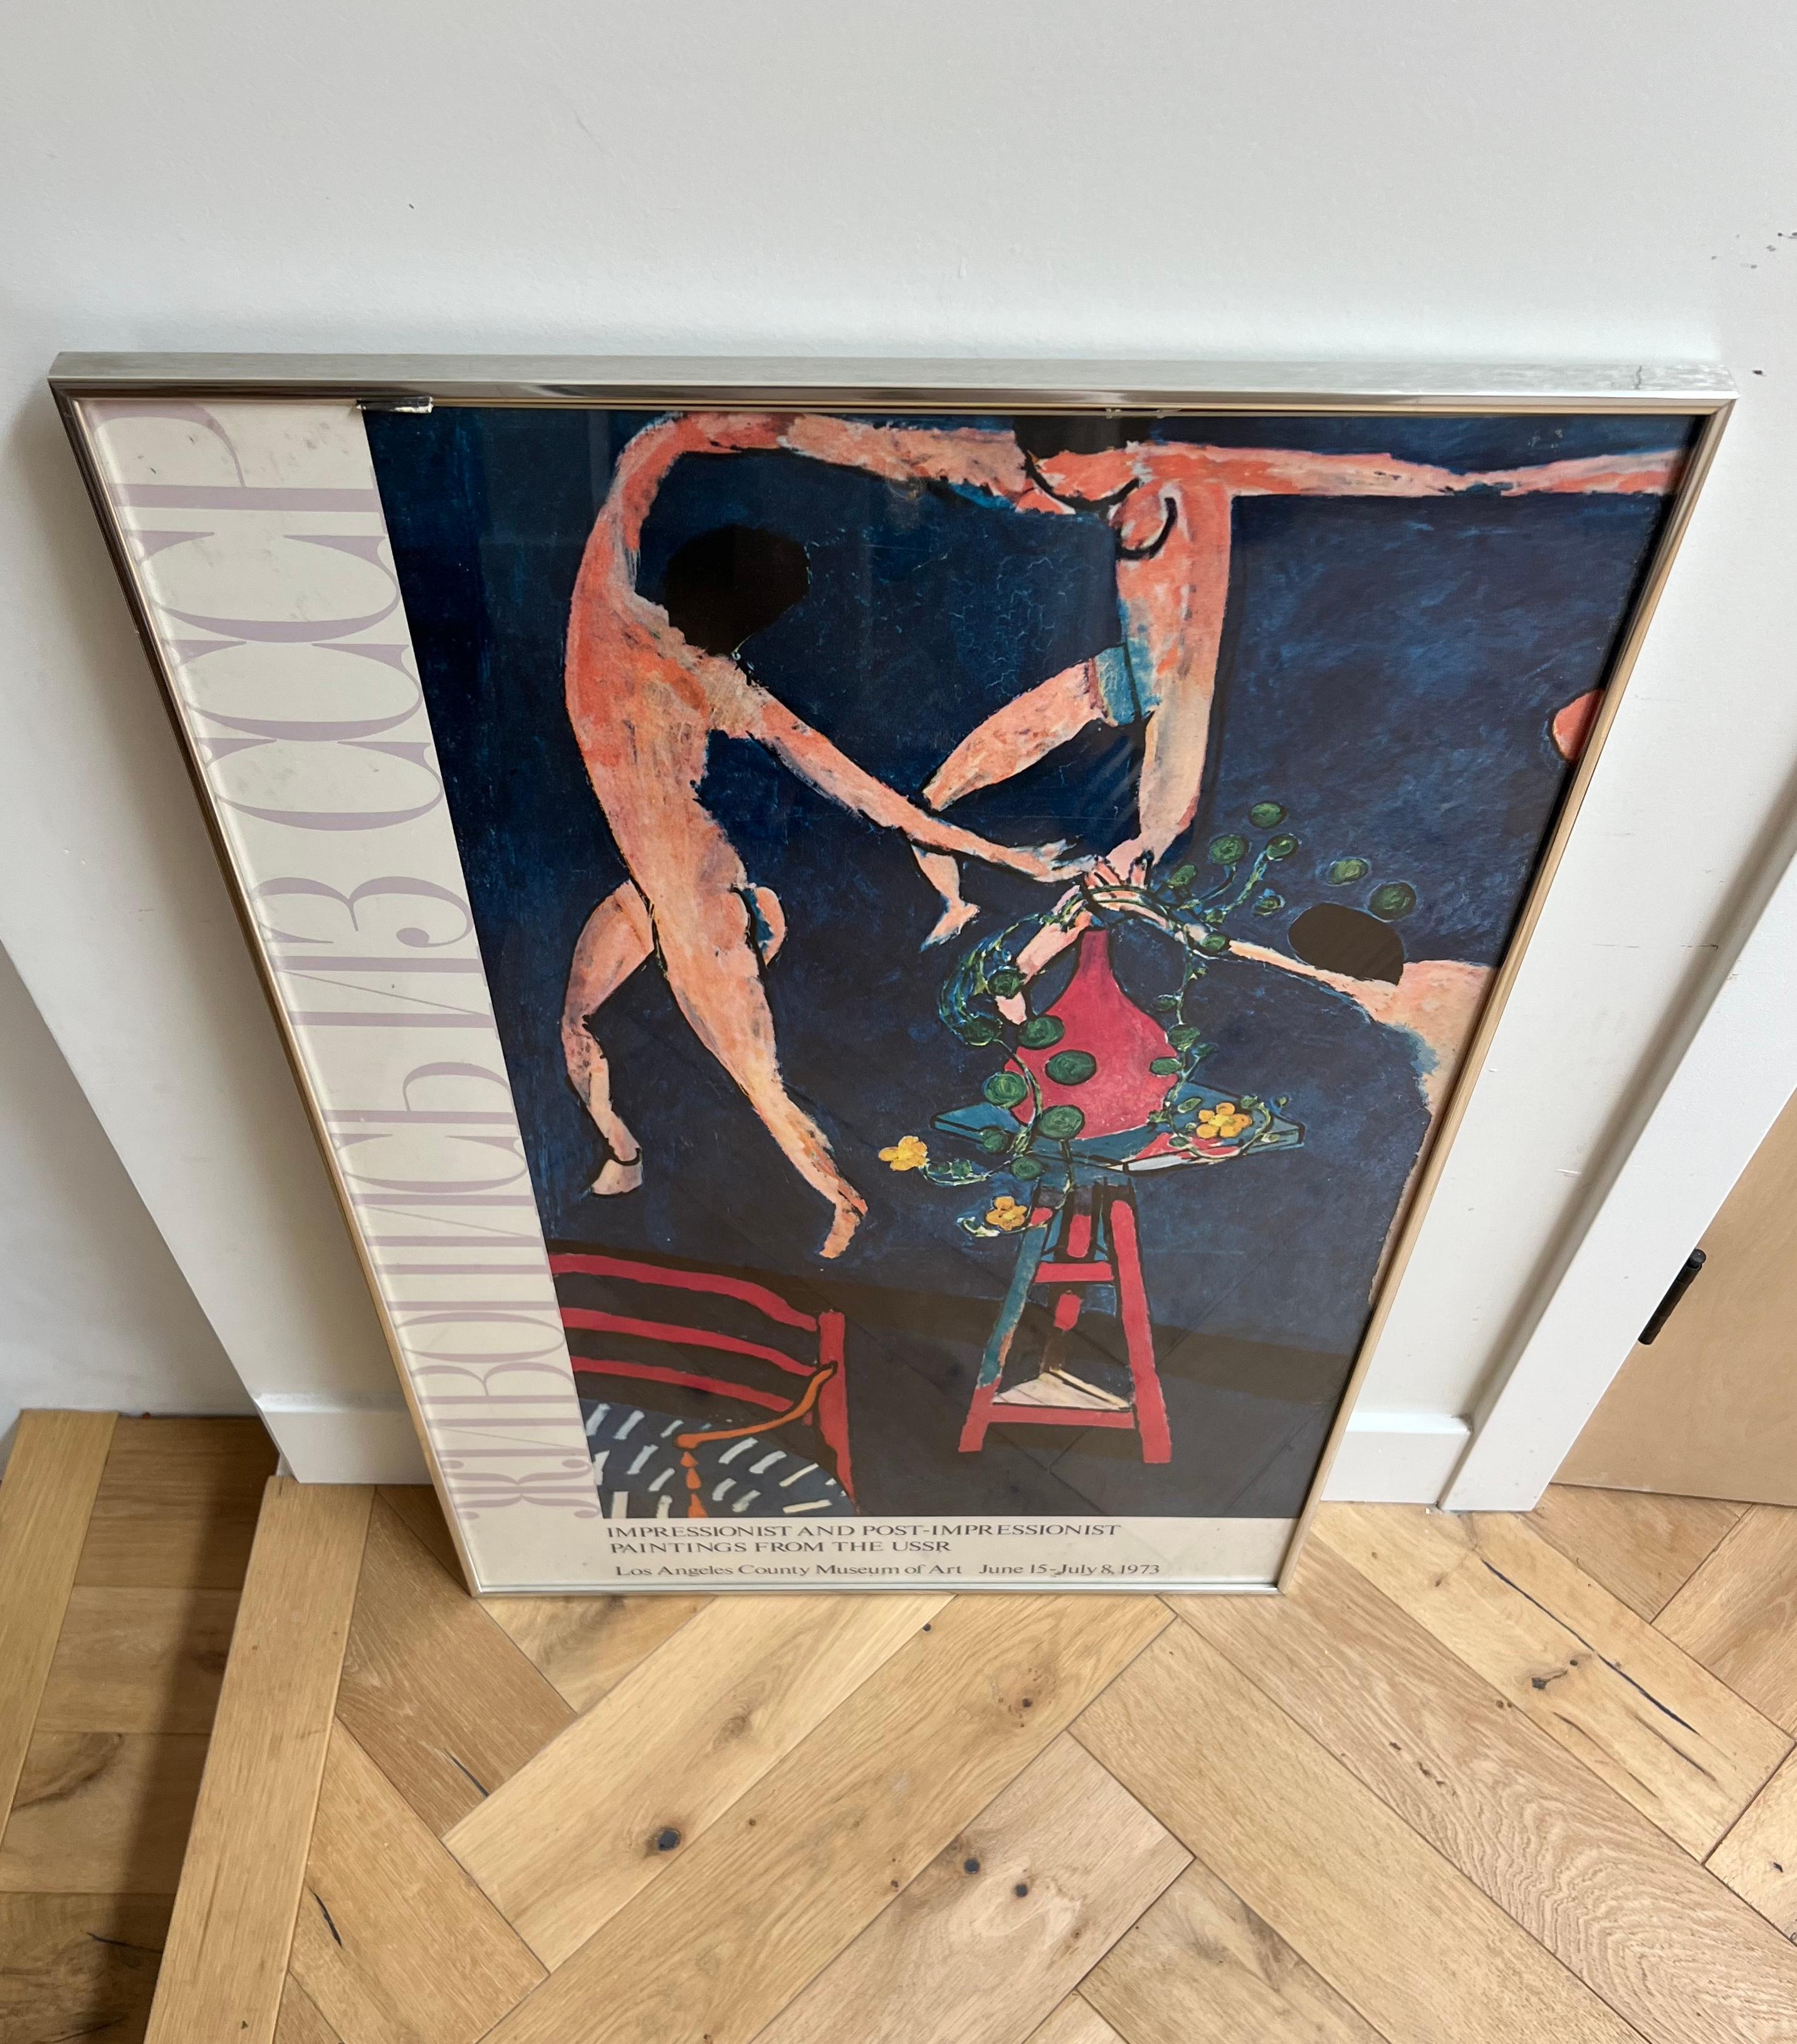 Vintage USSR Matisse exhibition poster, framed behind glass, 1973 3